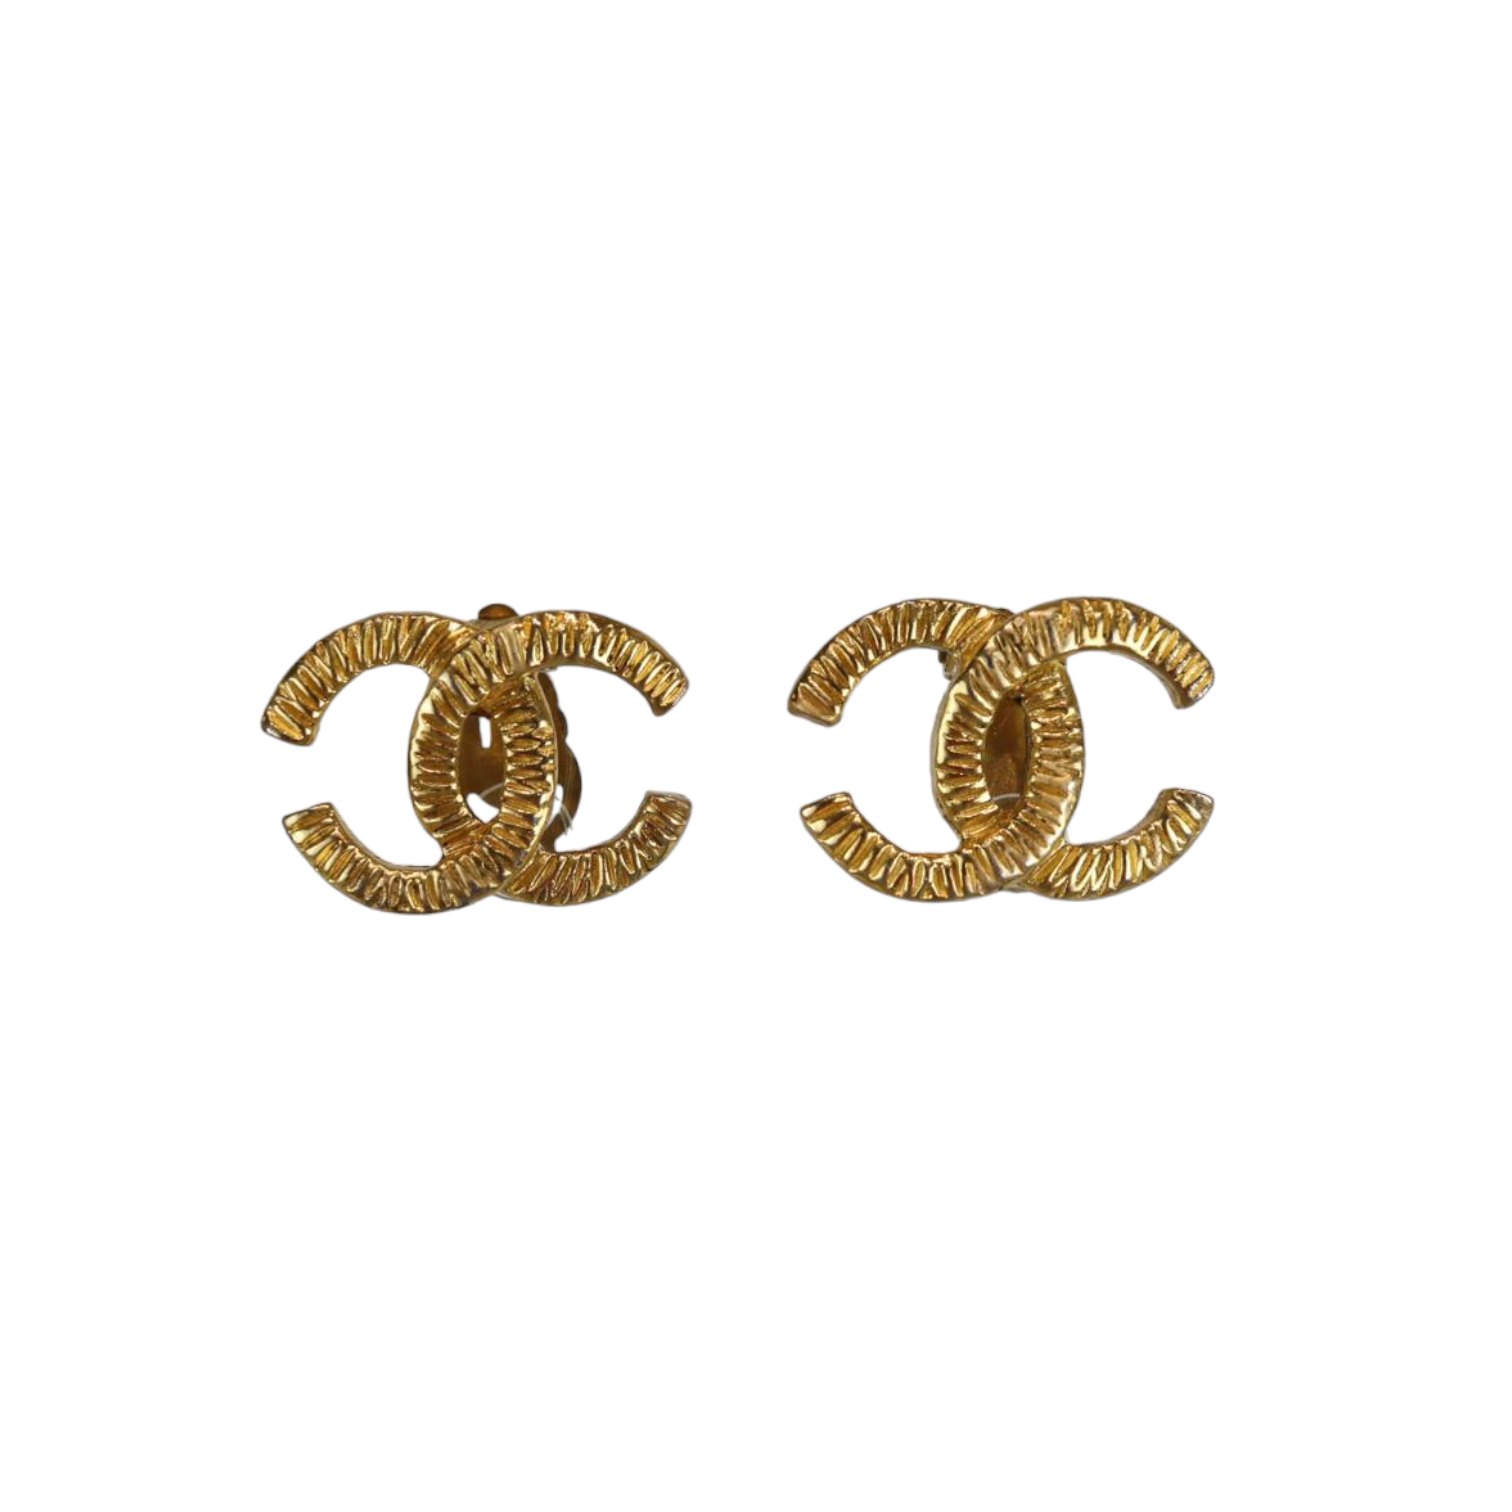 Chanel Logo Earrings - 29 For Sale on 1stDibs  chanel symbol earrings, cc  logo earrings, chanel logo stud earrings